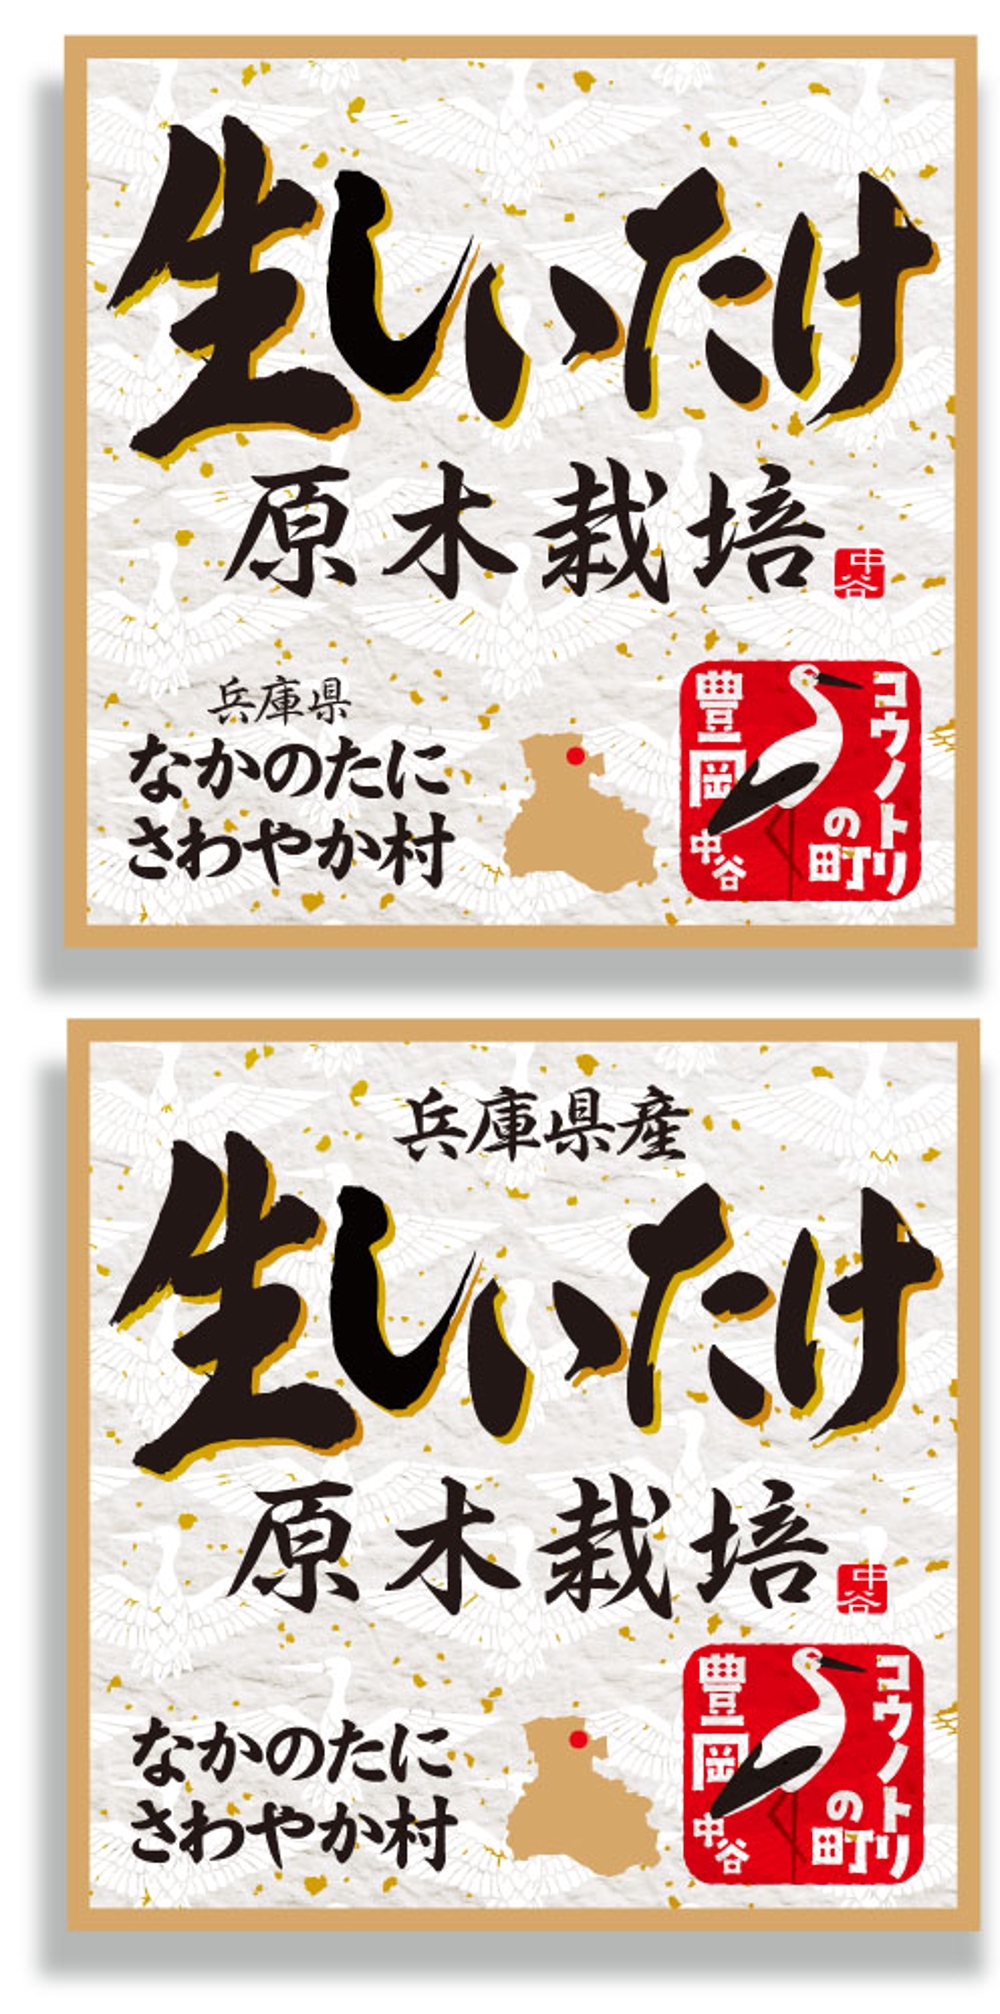 高級原木椎茸の市販用トレーパックに宣伝効果のあるラベルが貼りたい－デザイン